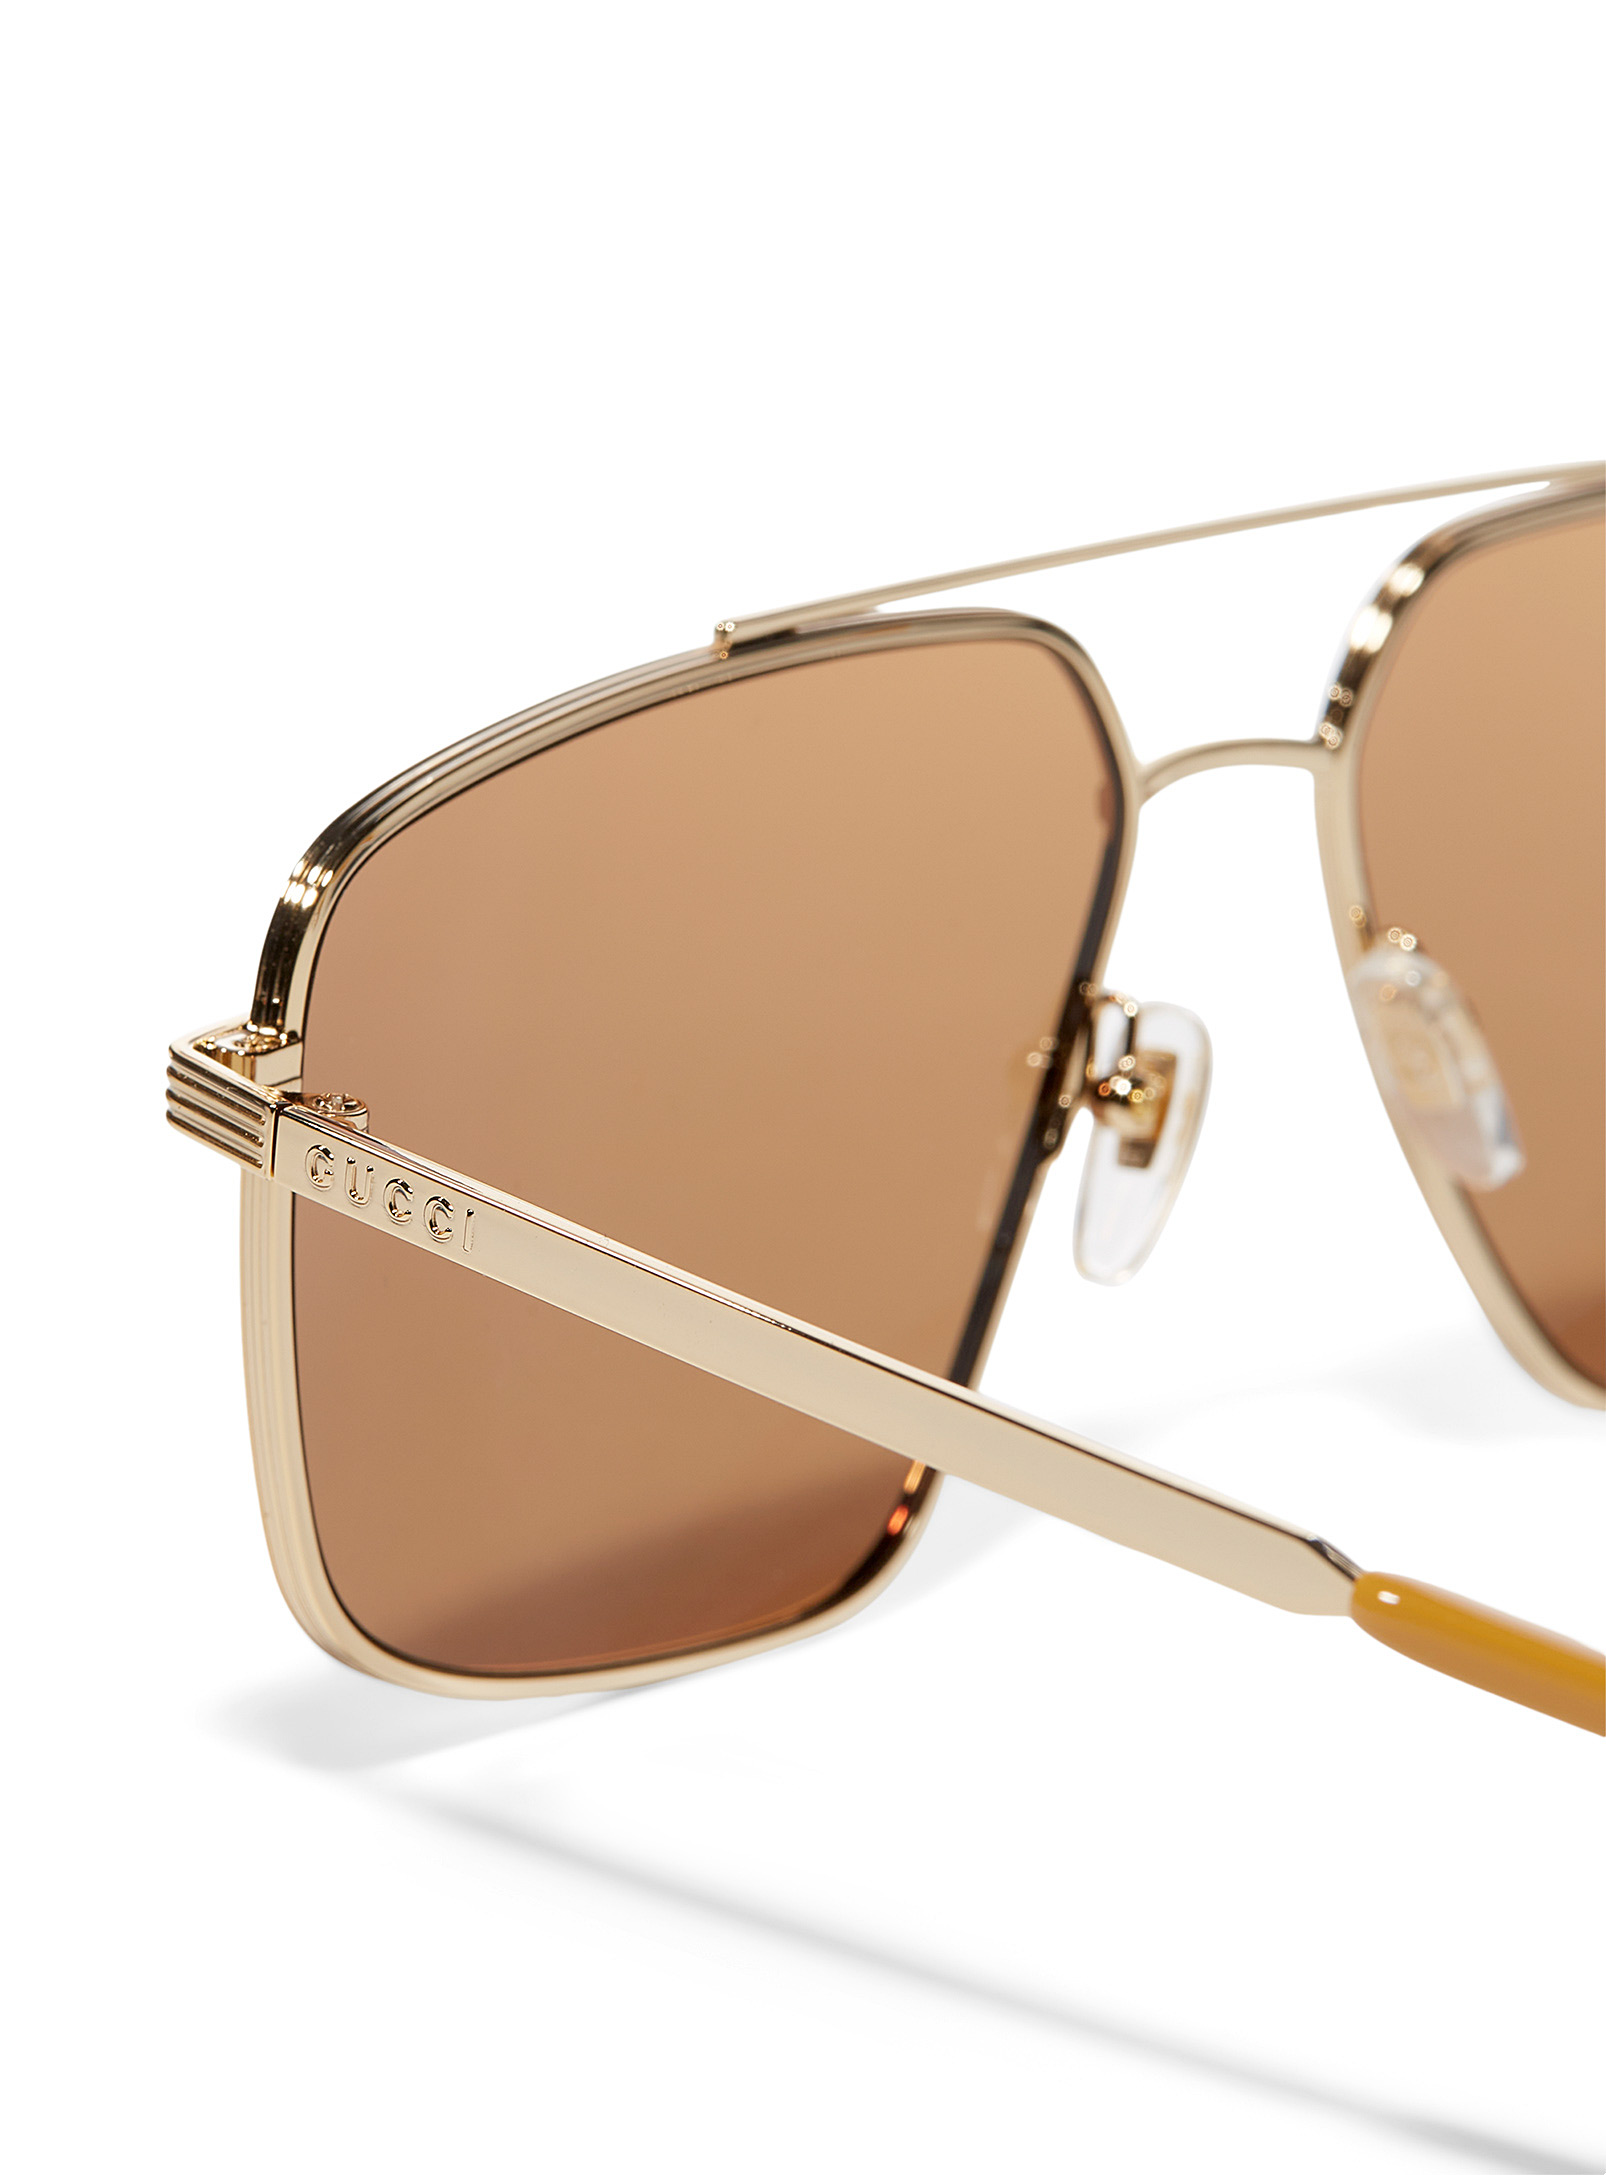 Gucci - Les lunettes de soleil aviateur géo métal doré